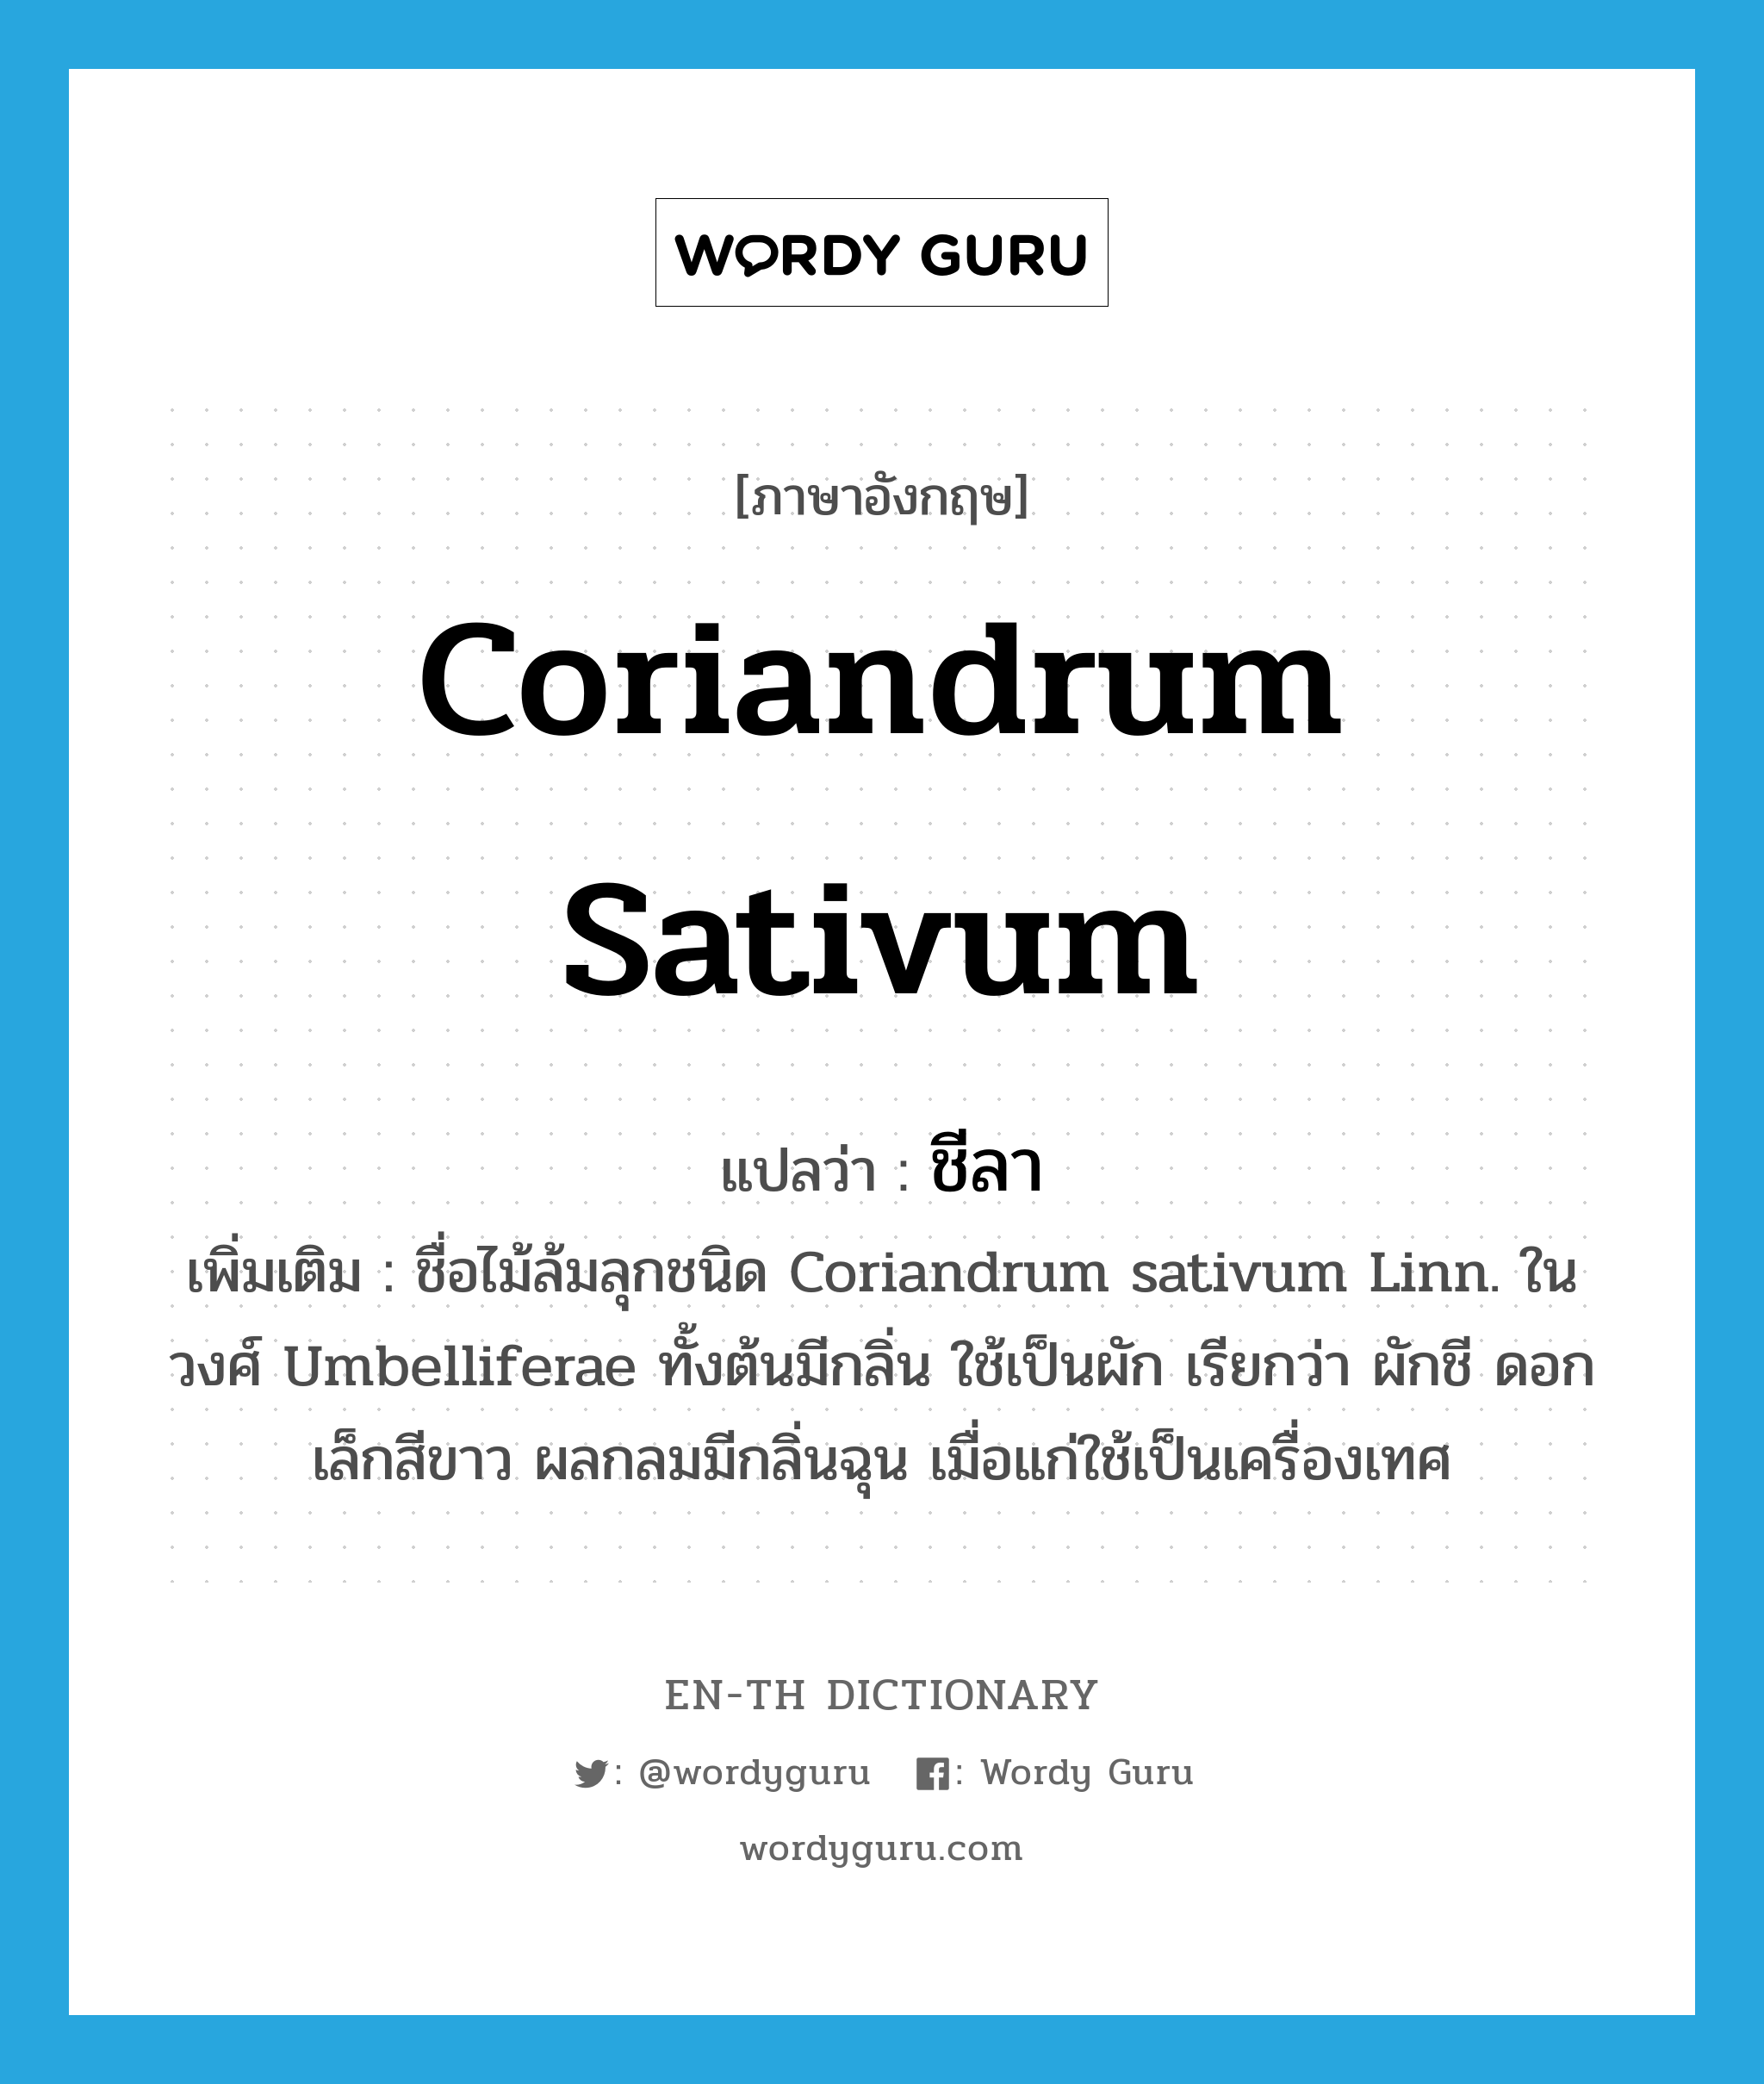 Coriandrum sativum แปลว่า?, คำศัพท์ภาษาอังกฤษ Coriandrum sativum แปลว่า ชีลา ประเภท N เพิ่มเติม ชื่อไม้ล้มลุกชนิด Coriandrum sativum Linn. ในวงศ์ Umbelliferae ทั้งต้นมีกลิ่น ใช้เป็นผัก เรียกว่า ผักชี ดอกเล็กสีขาว ผลกลมมีกลิ่นฉุน เมื่อแก่ใช้เป็นเครื่องเทศ หมวด N